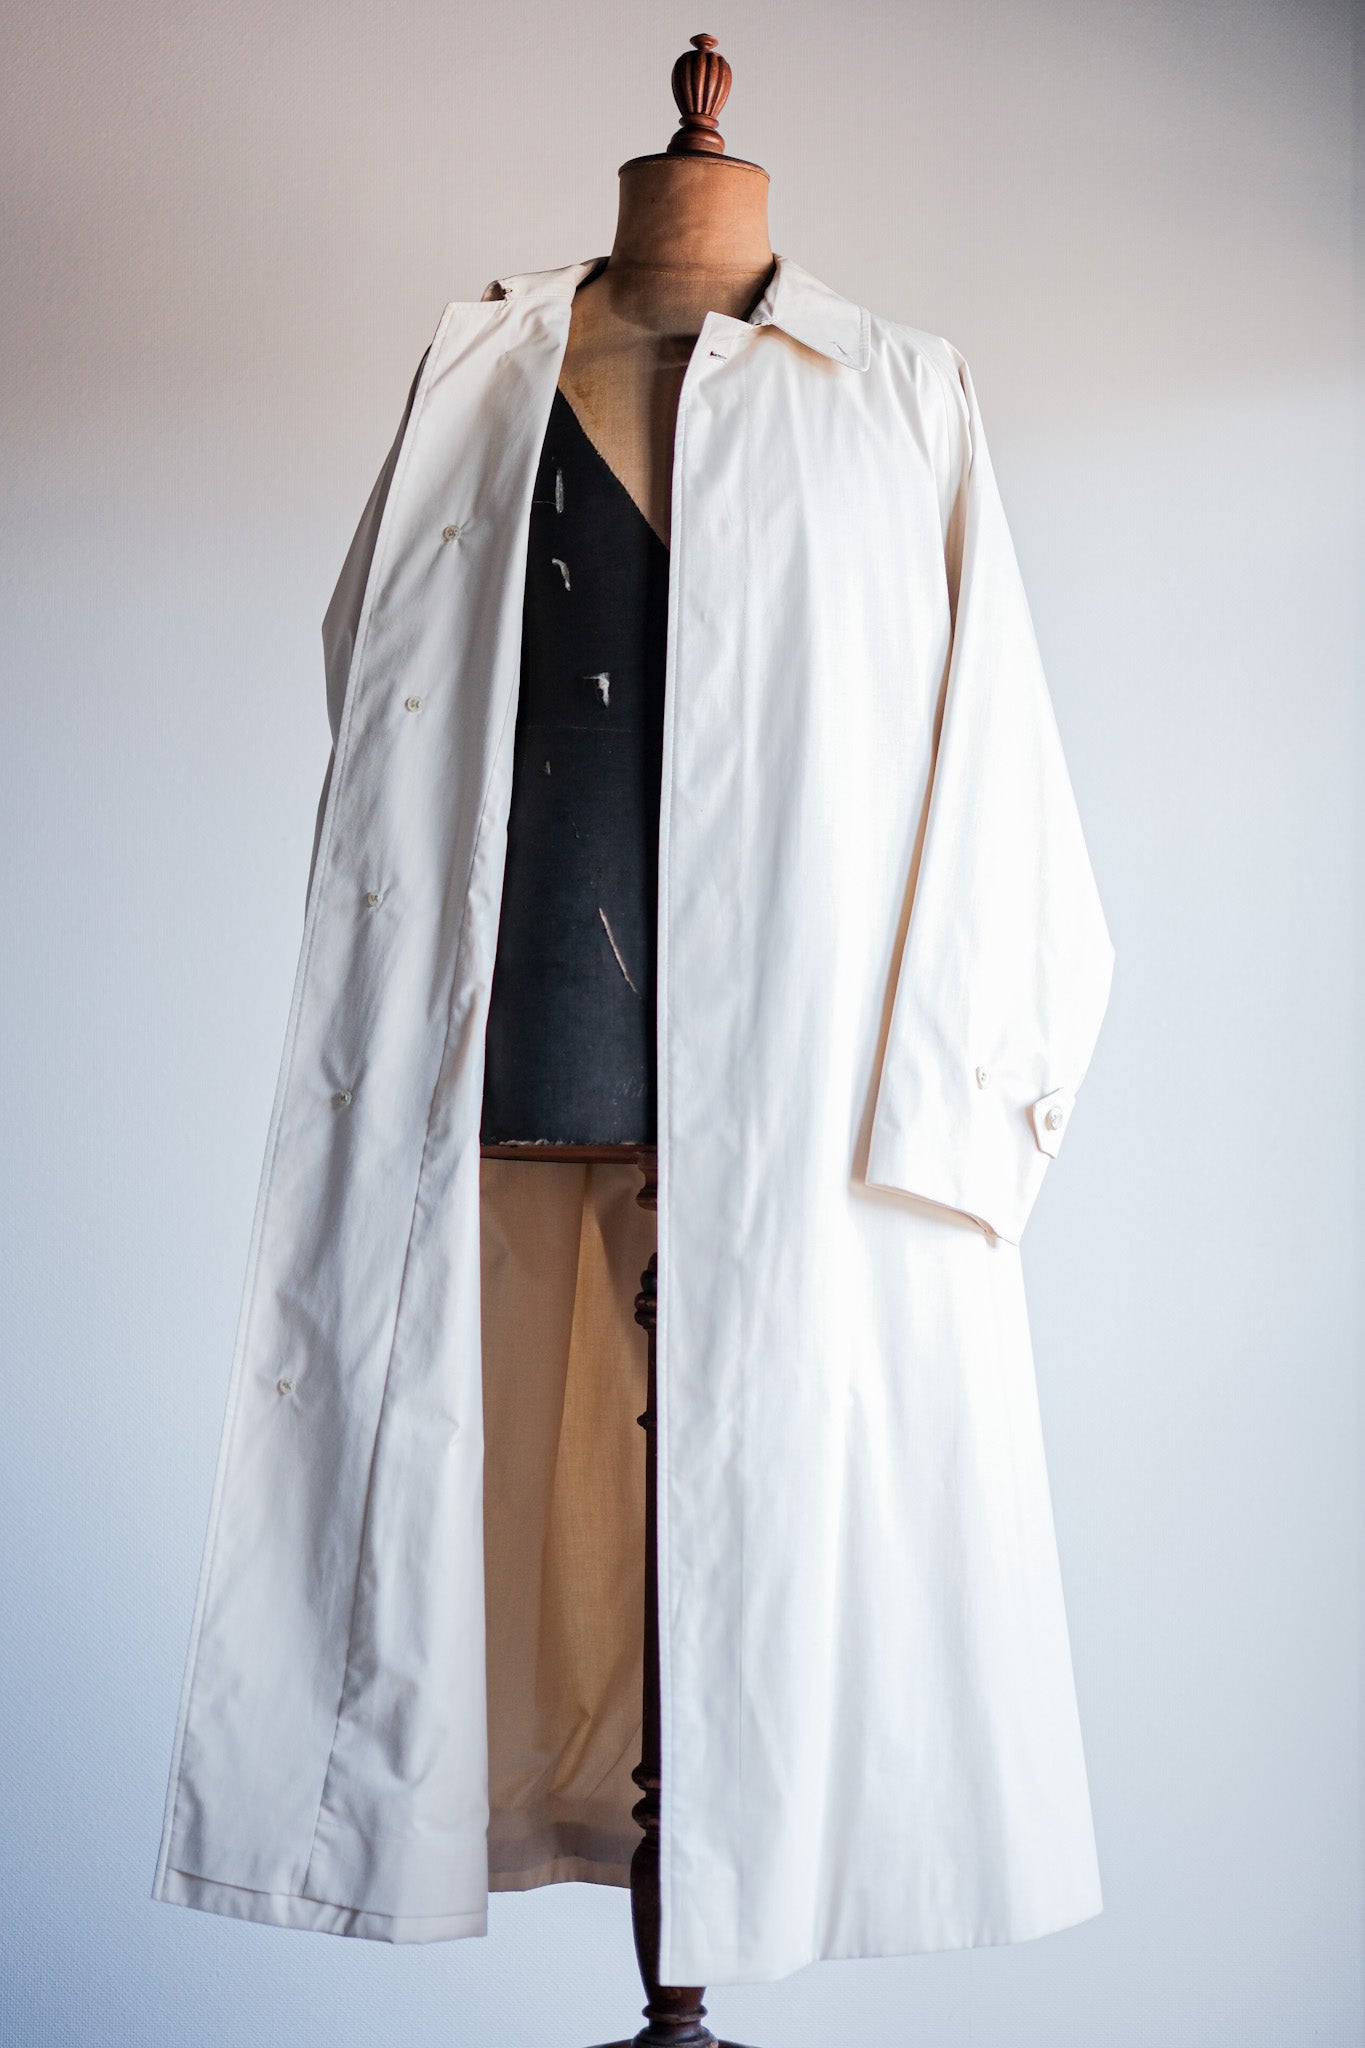 [~ 80 년대] 빈티지 버버리 싱글 raglan balmacaan 벨트 코트 크기 .50RL "Musou"